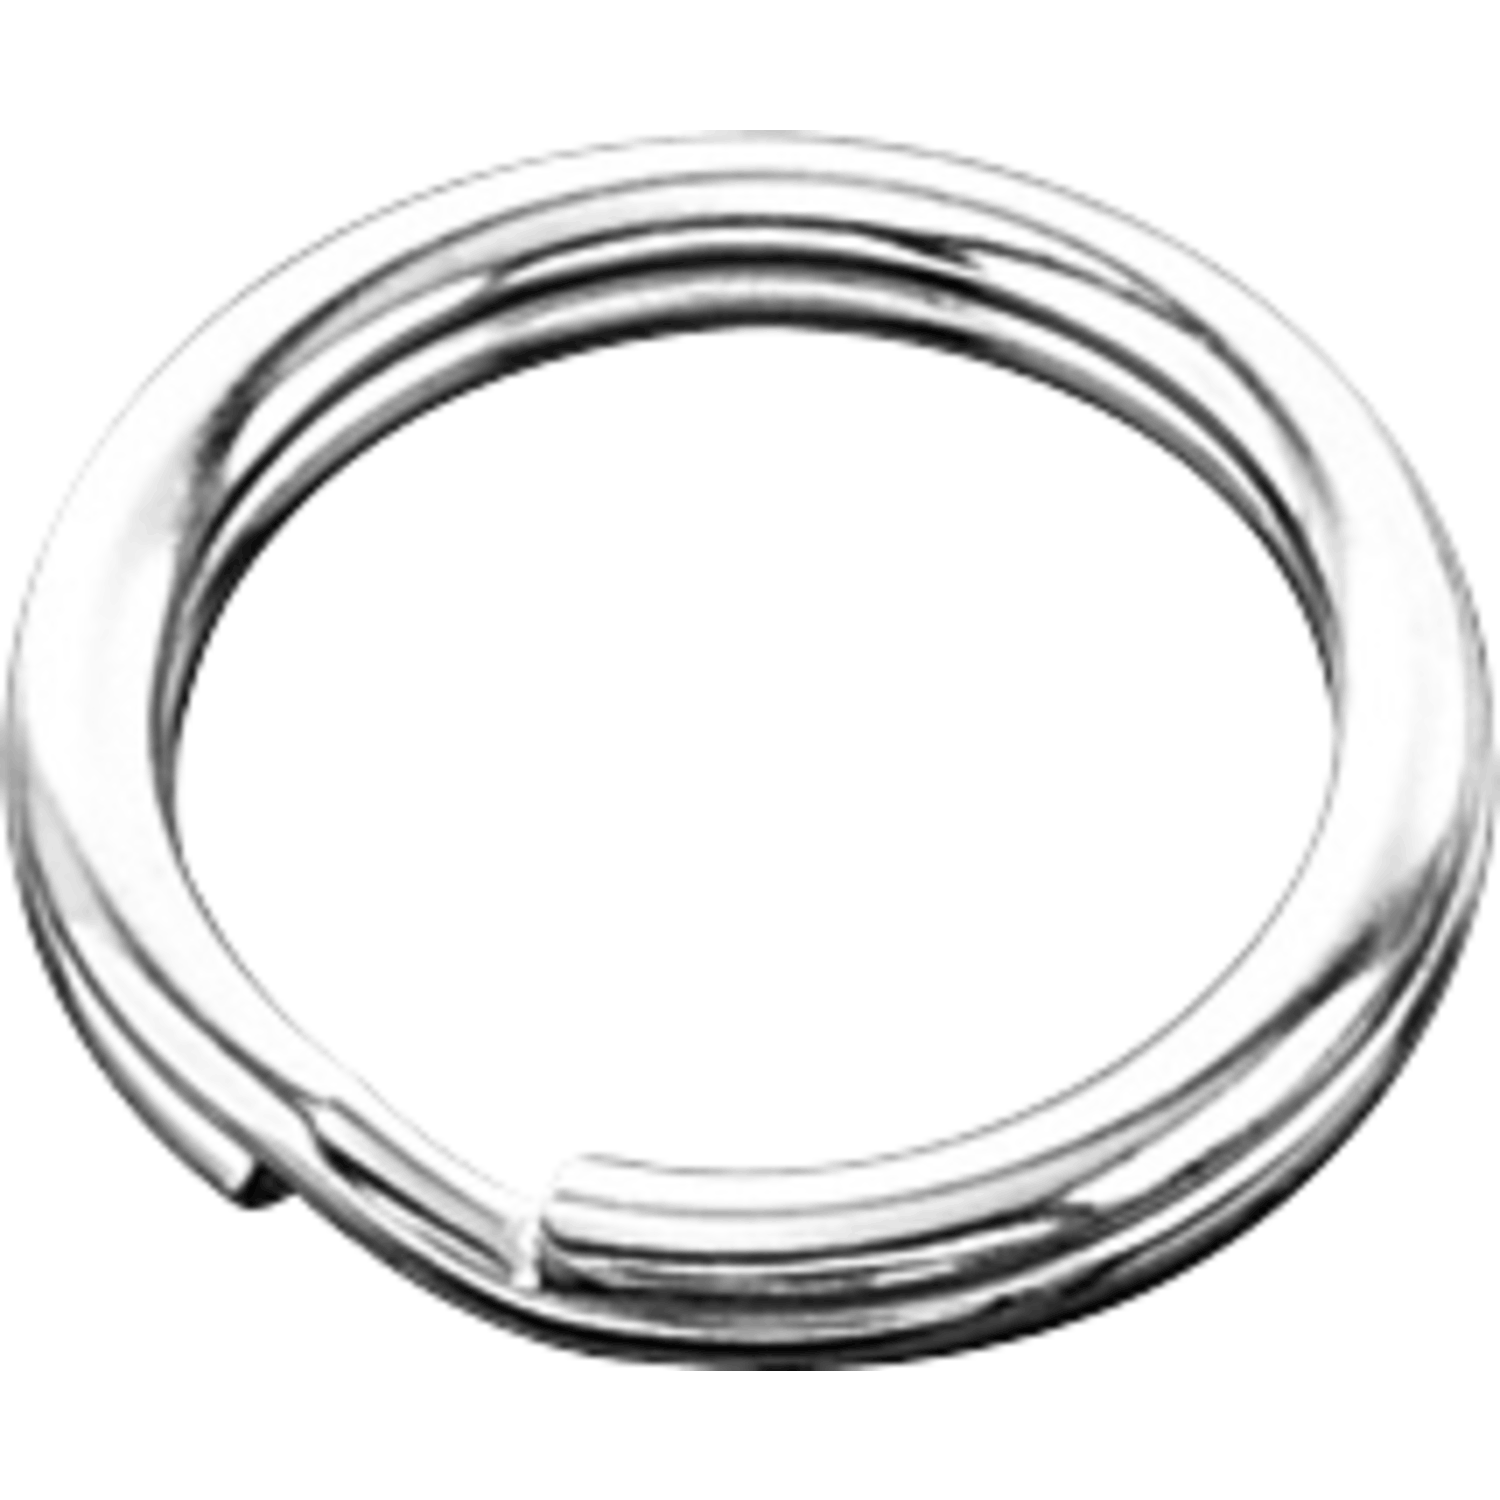 Key Ring (Steel Nickel-Plated)